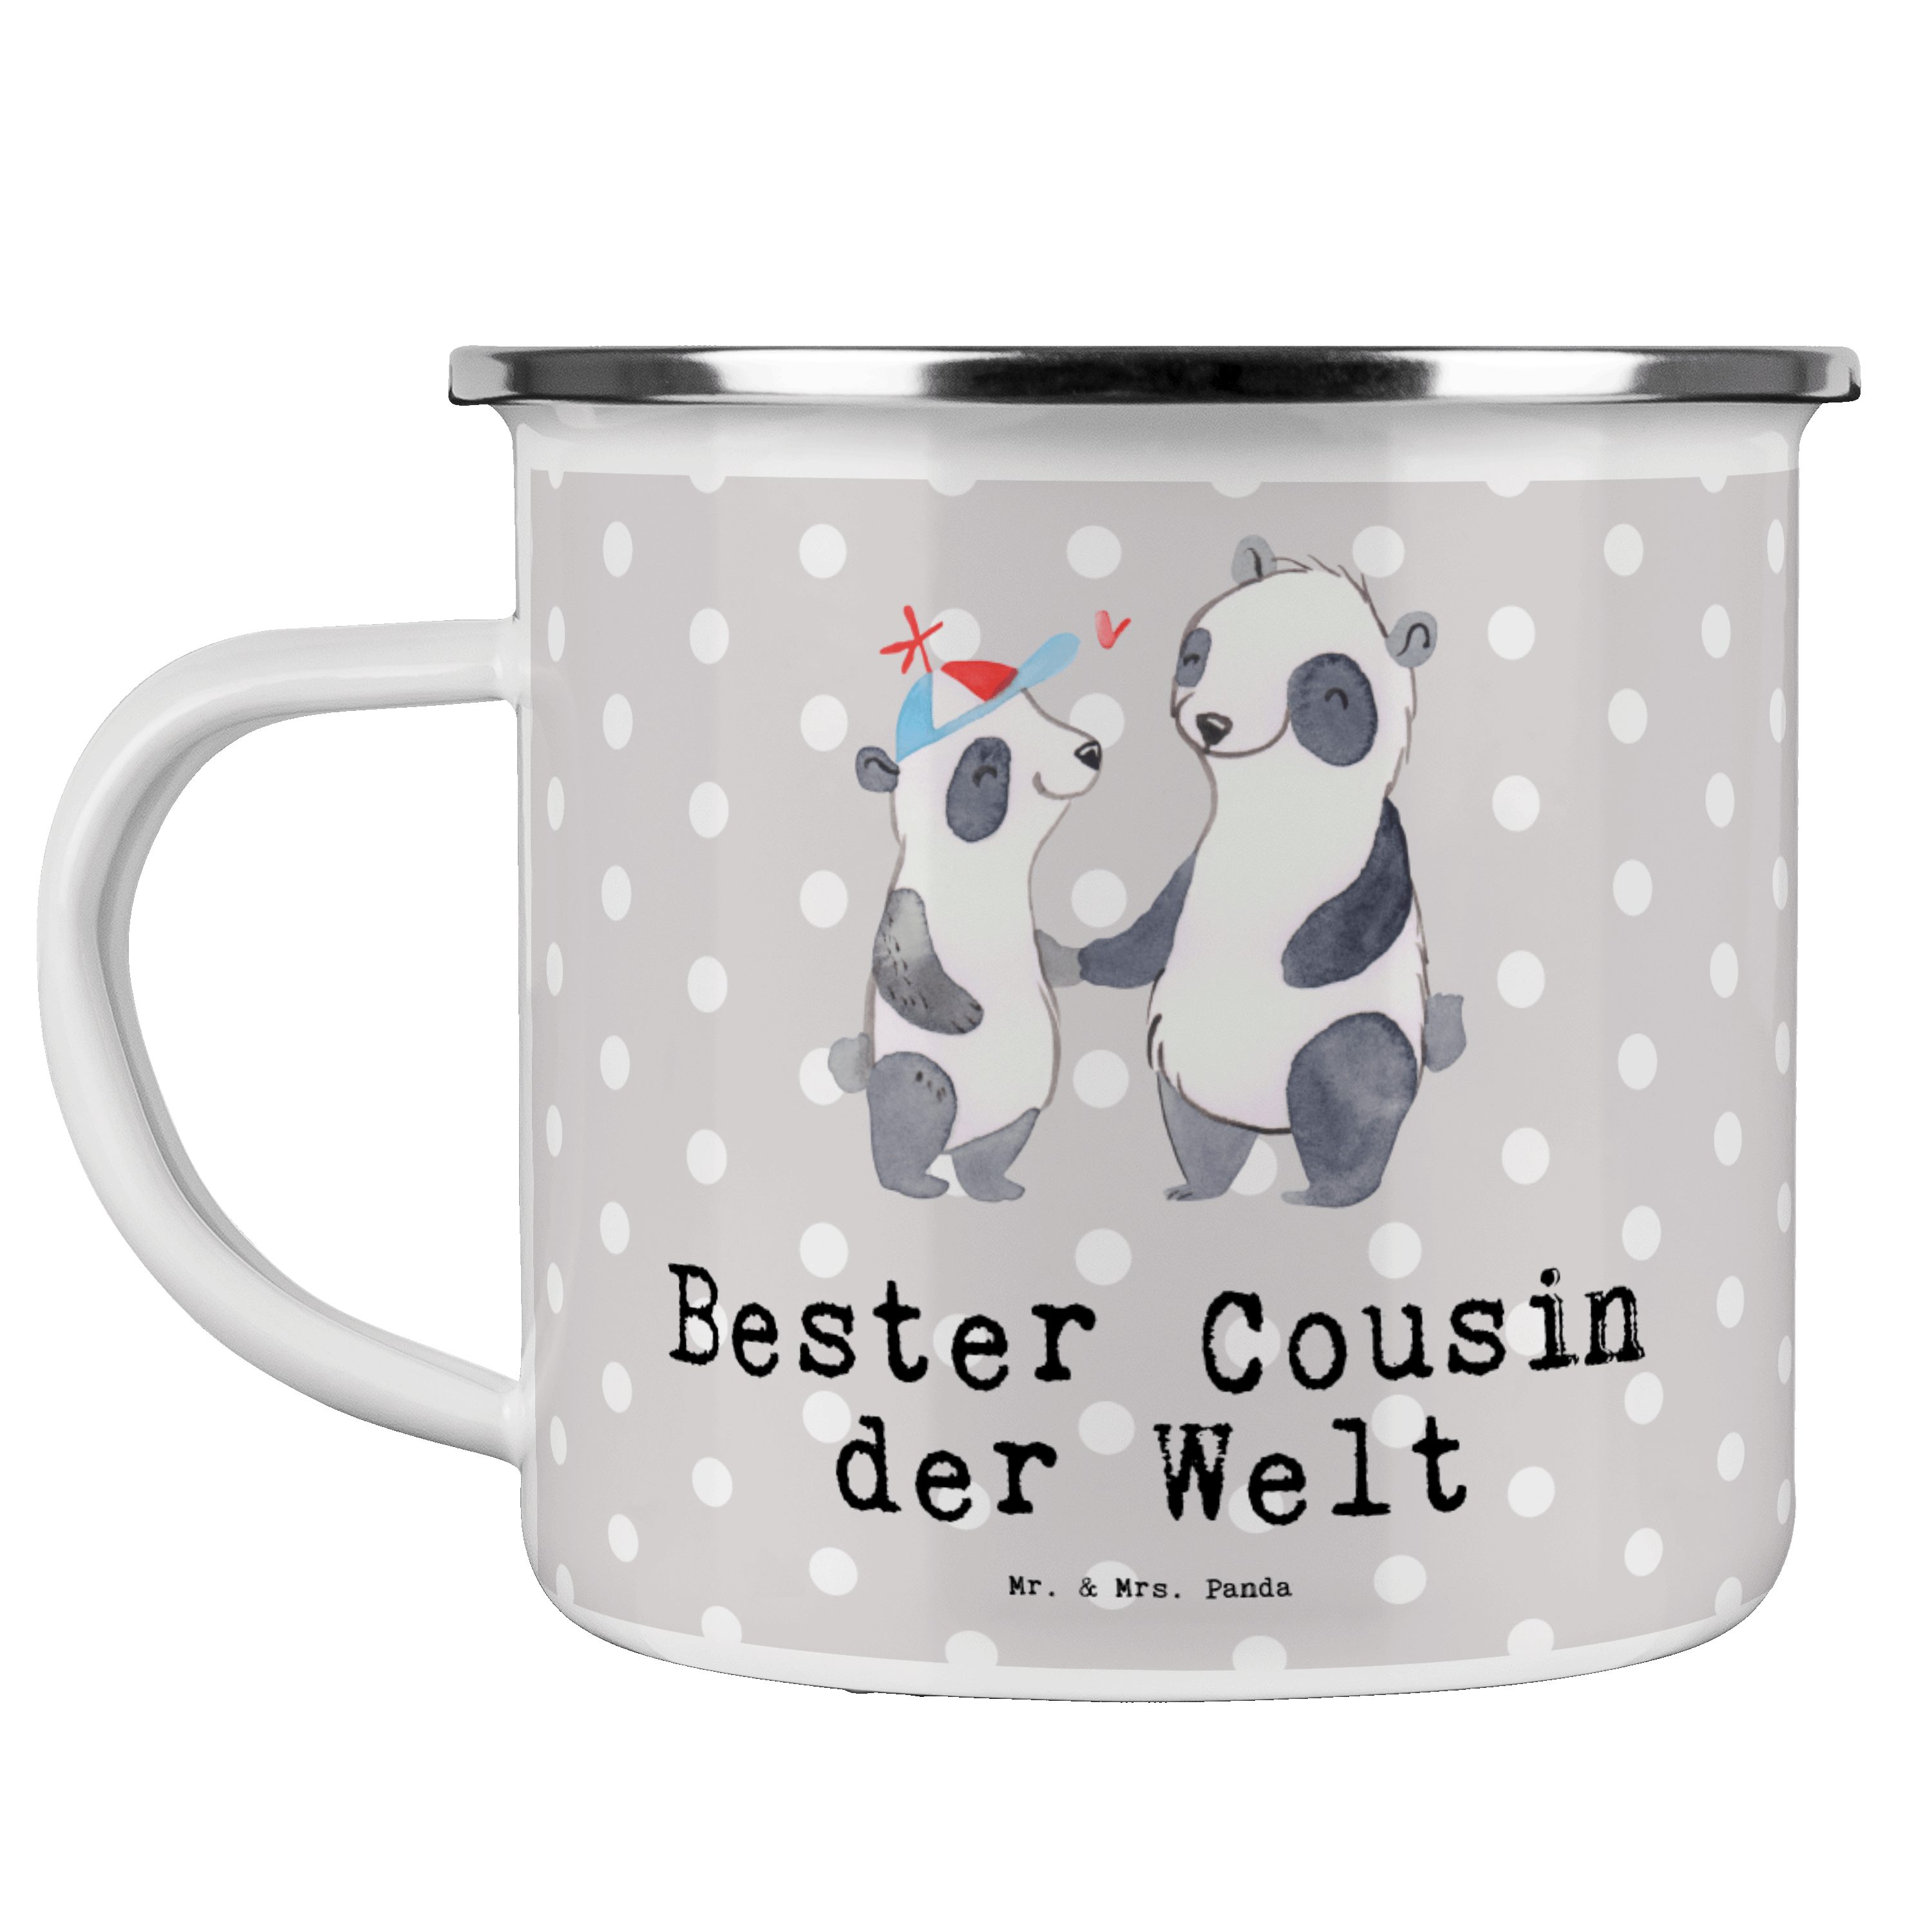 Grau Cousin Emaille Pastell - Bester & Becher Welt Mr. Verwandtschaf, Panda der - Geschenk, Panda Mrs.